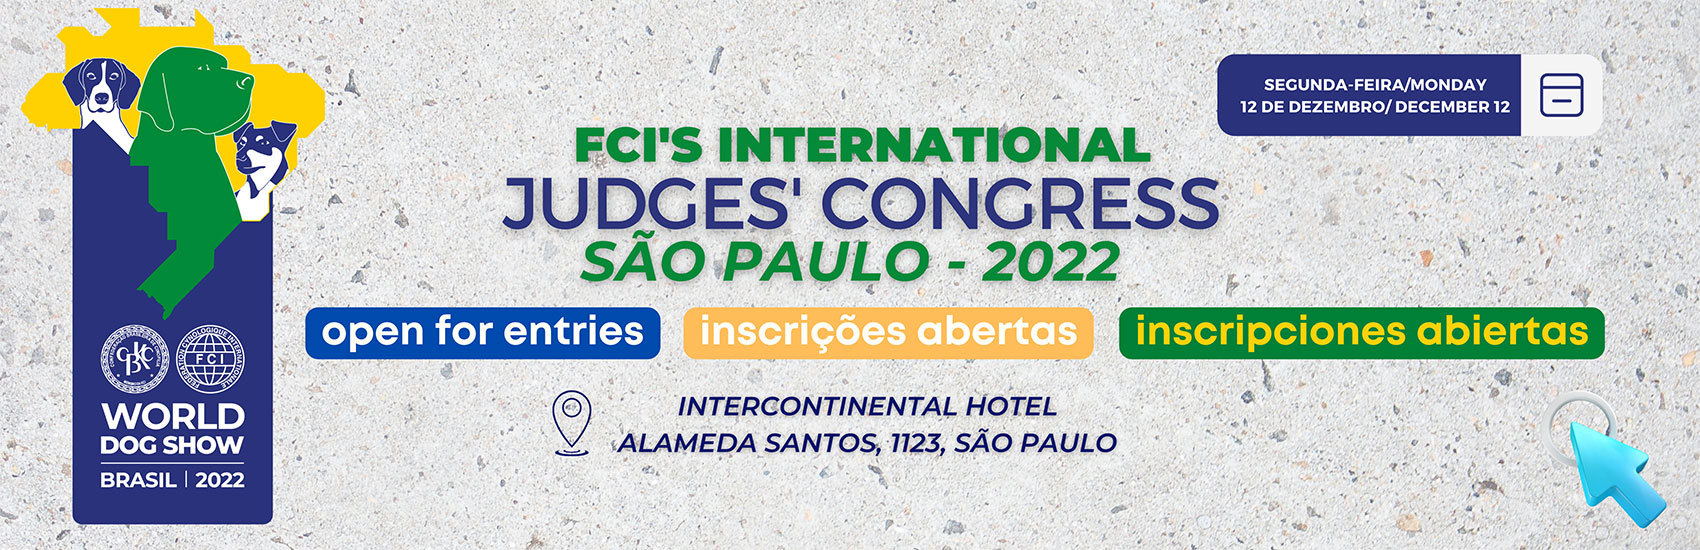 Congresso Internacional de Árbitros FCI 2022